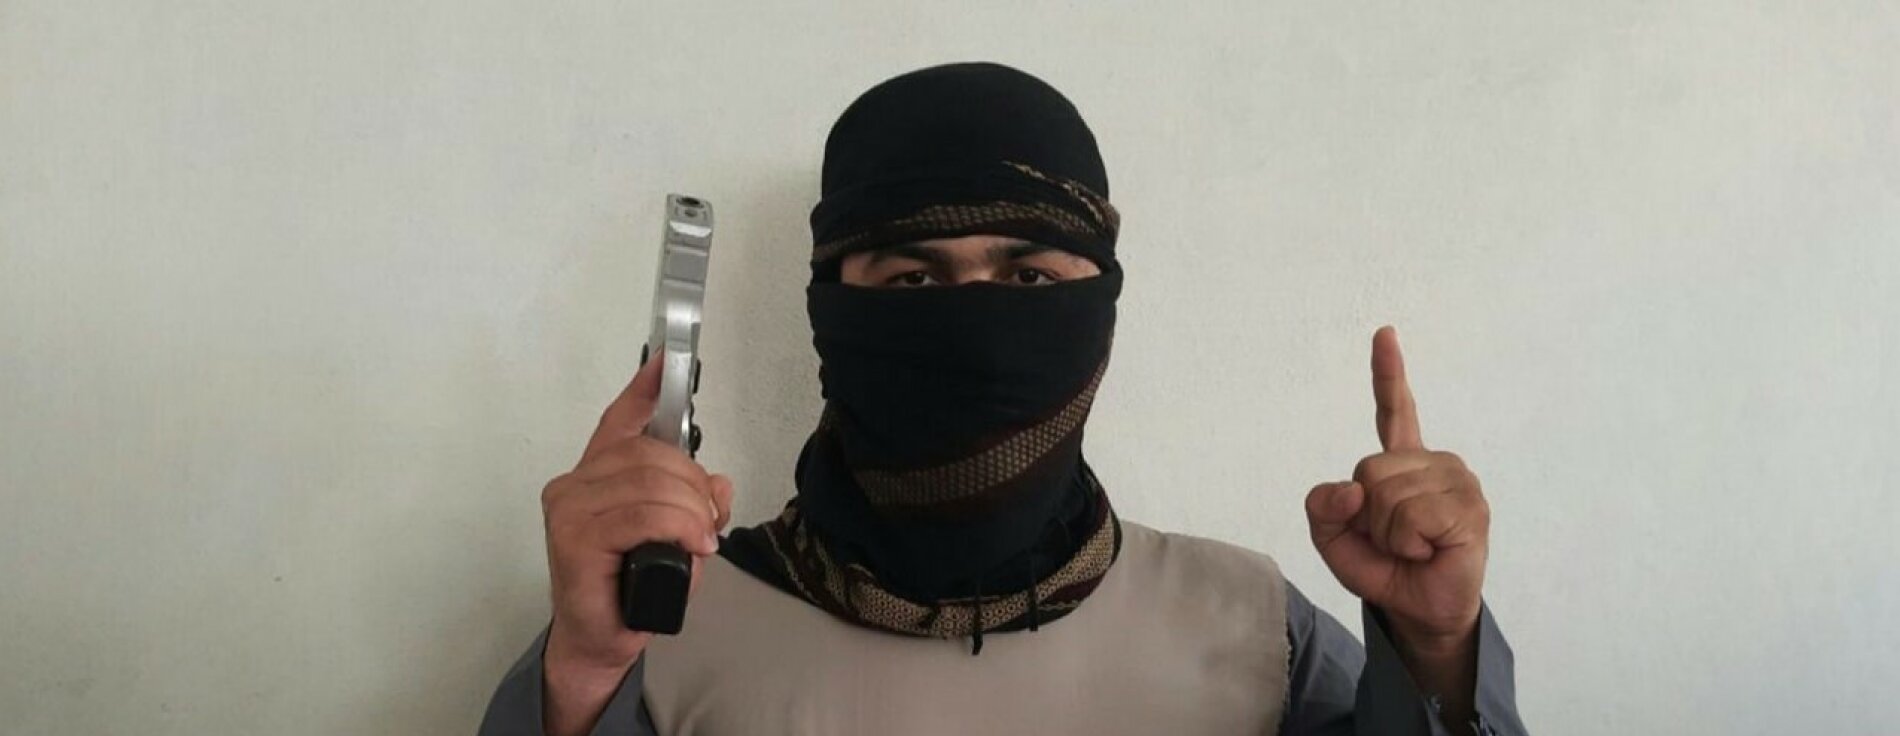 Das Bild zeigt einen Jihadisten - vermummt mit Waffe und Tauhid-Finger